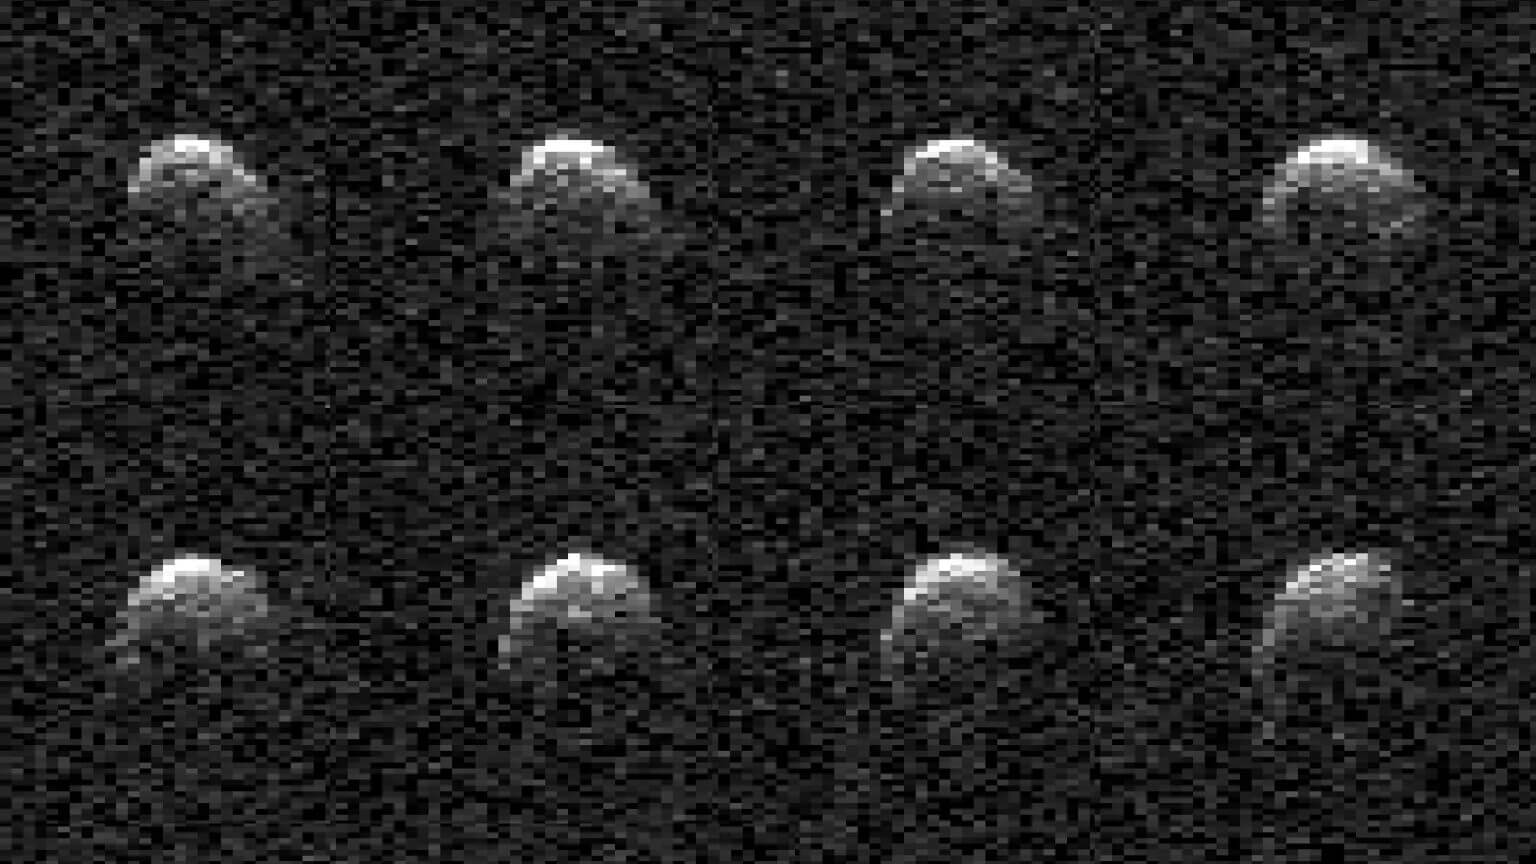 ההתקרבות האחרונה של האסטרואיד 2008 OS7 לכדור הארץ ביום שלפני שהאסטרואיד 2008 OS7 עבר בקרבת כדור הארץ ב-2 בפברואר 2024. סדרה זו של תמונות צולמה על-ידי אנטנת מכ"ם מערכת השמש גולדסטון העוצמתית בגובה 230 רגל (70 מטר) ליד ברסטו, קליפורניה. קרדיט: נאס"א/JPL-Caltech